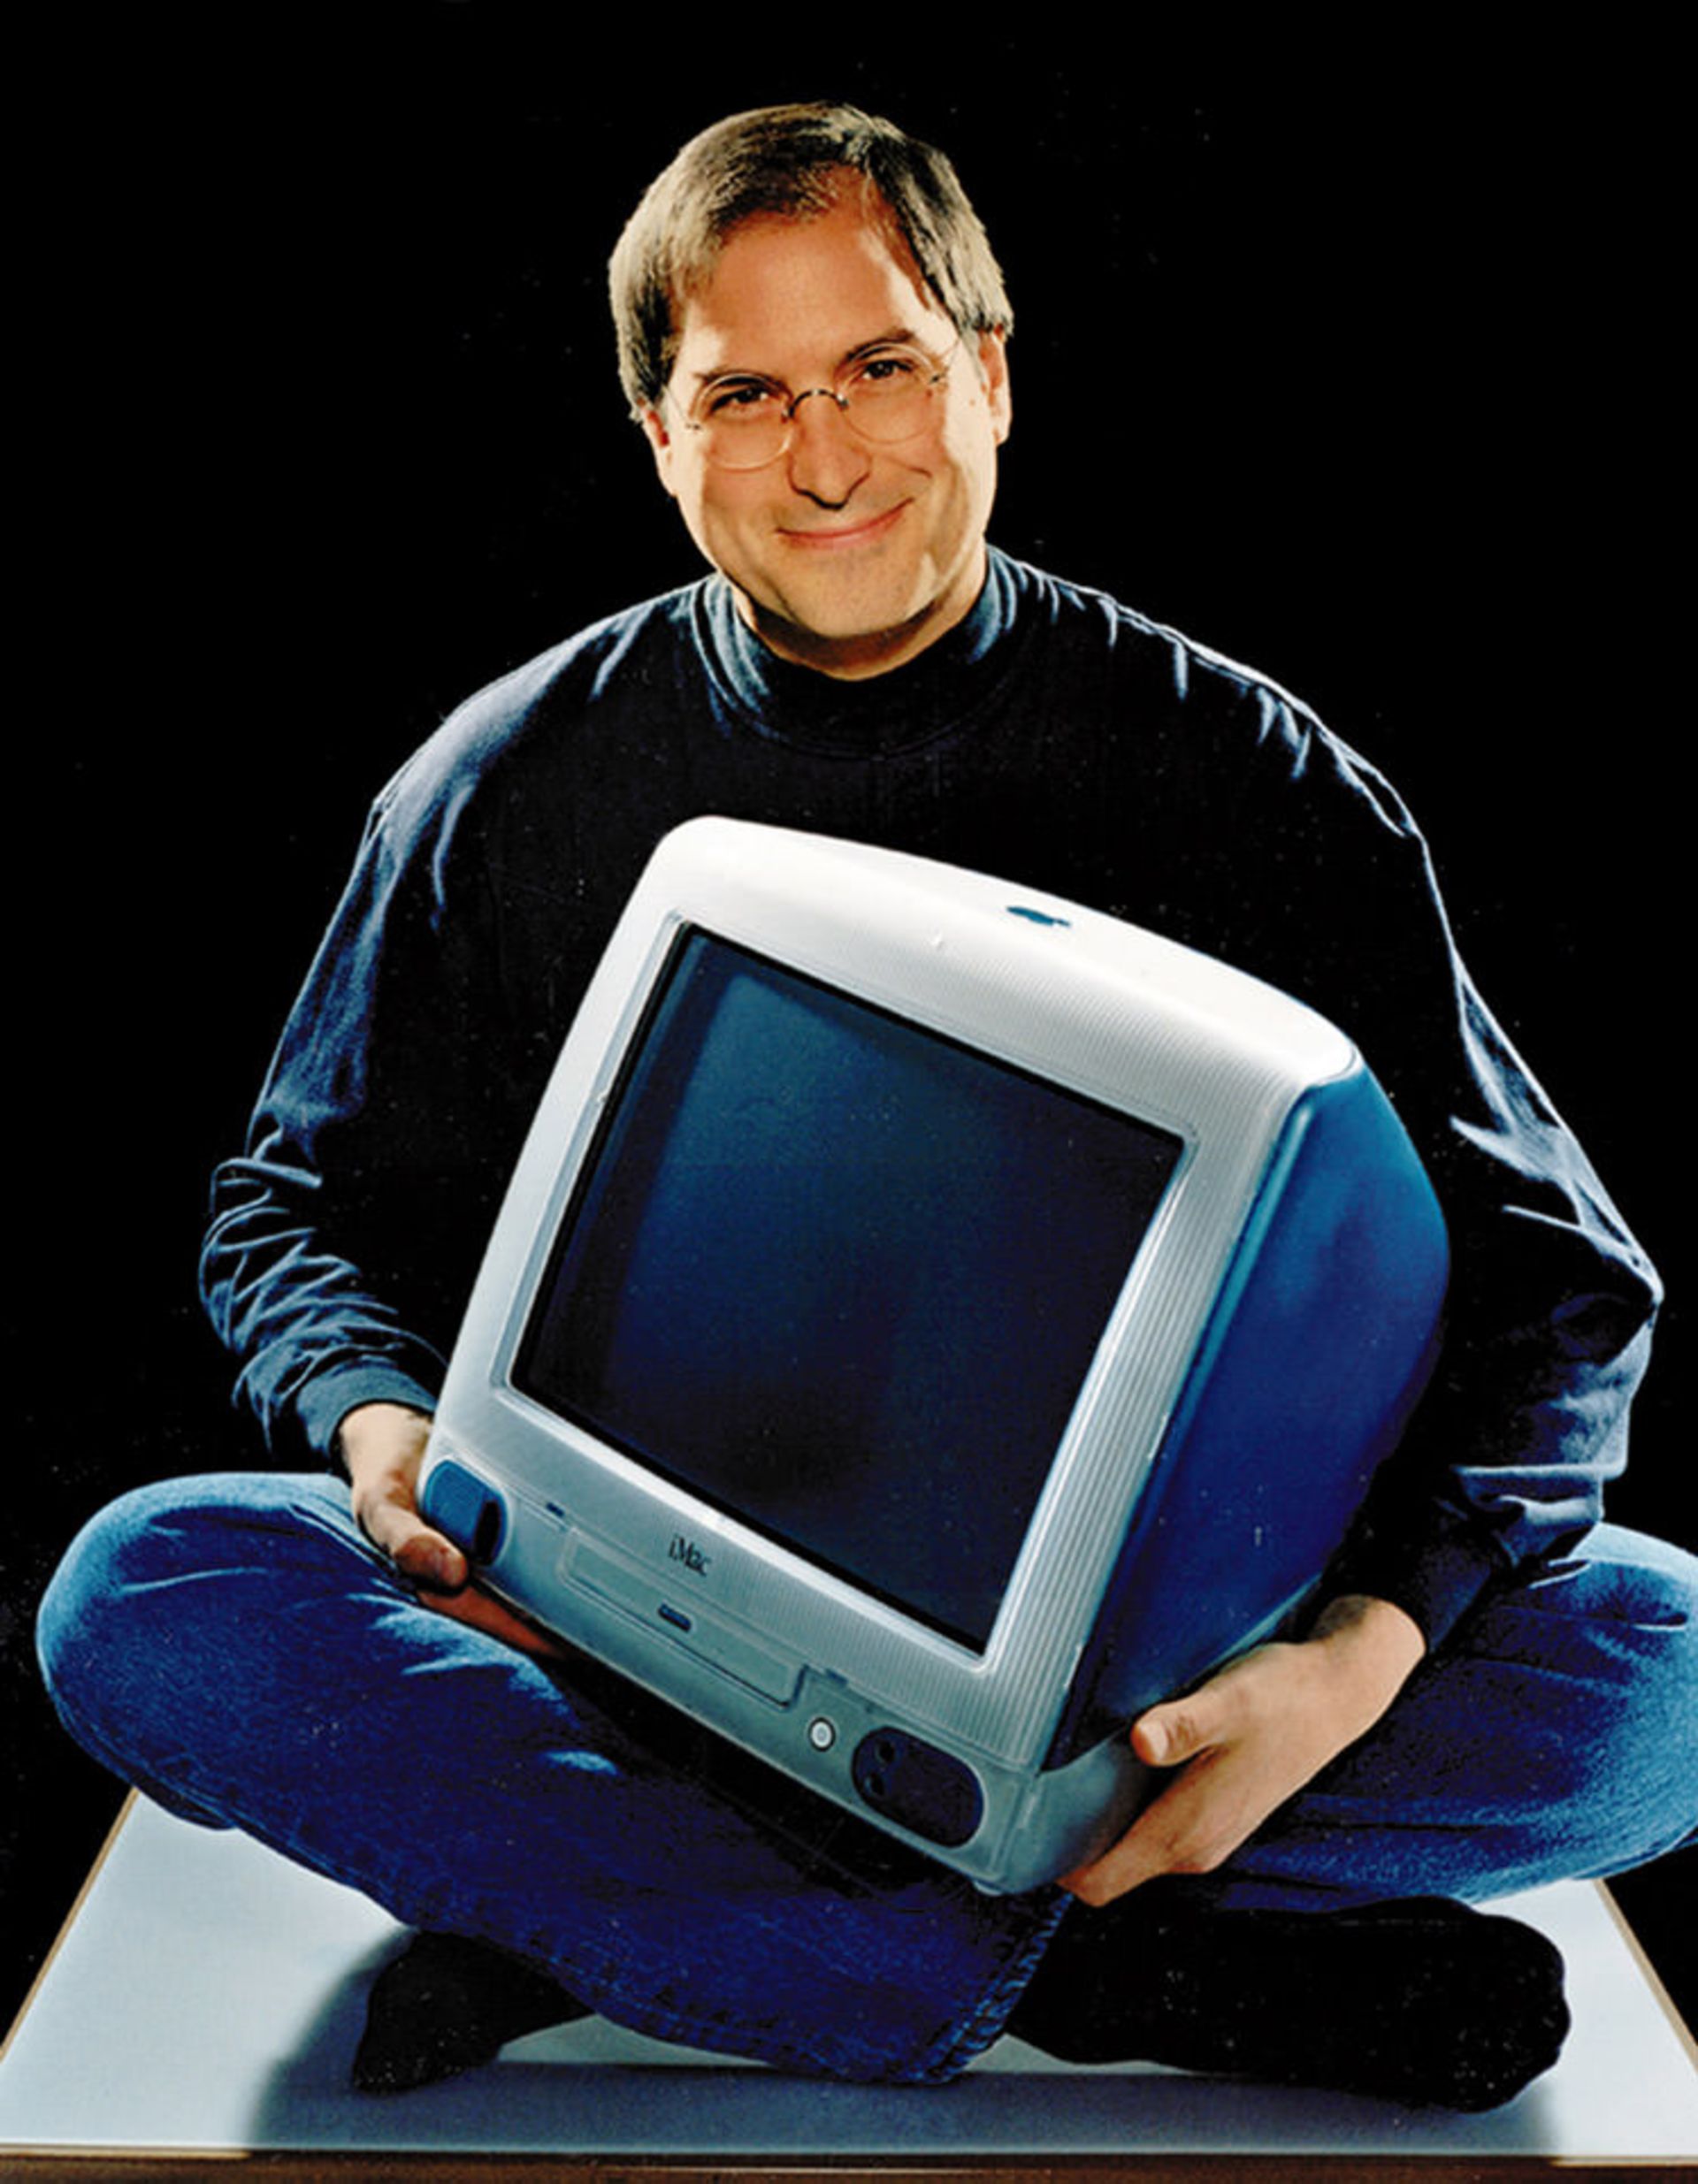 مرجع متخصصين ايران استيو جابز آي مك Steve Jobs iMac G3